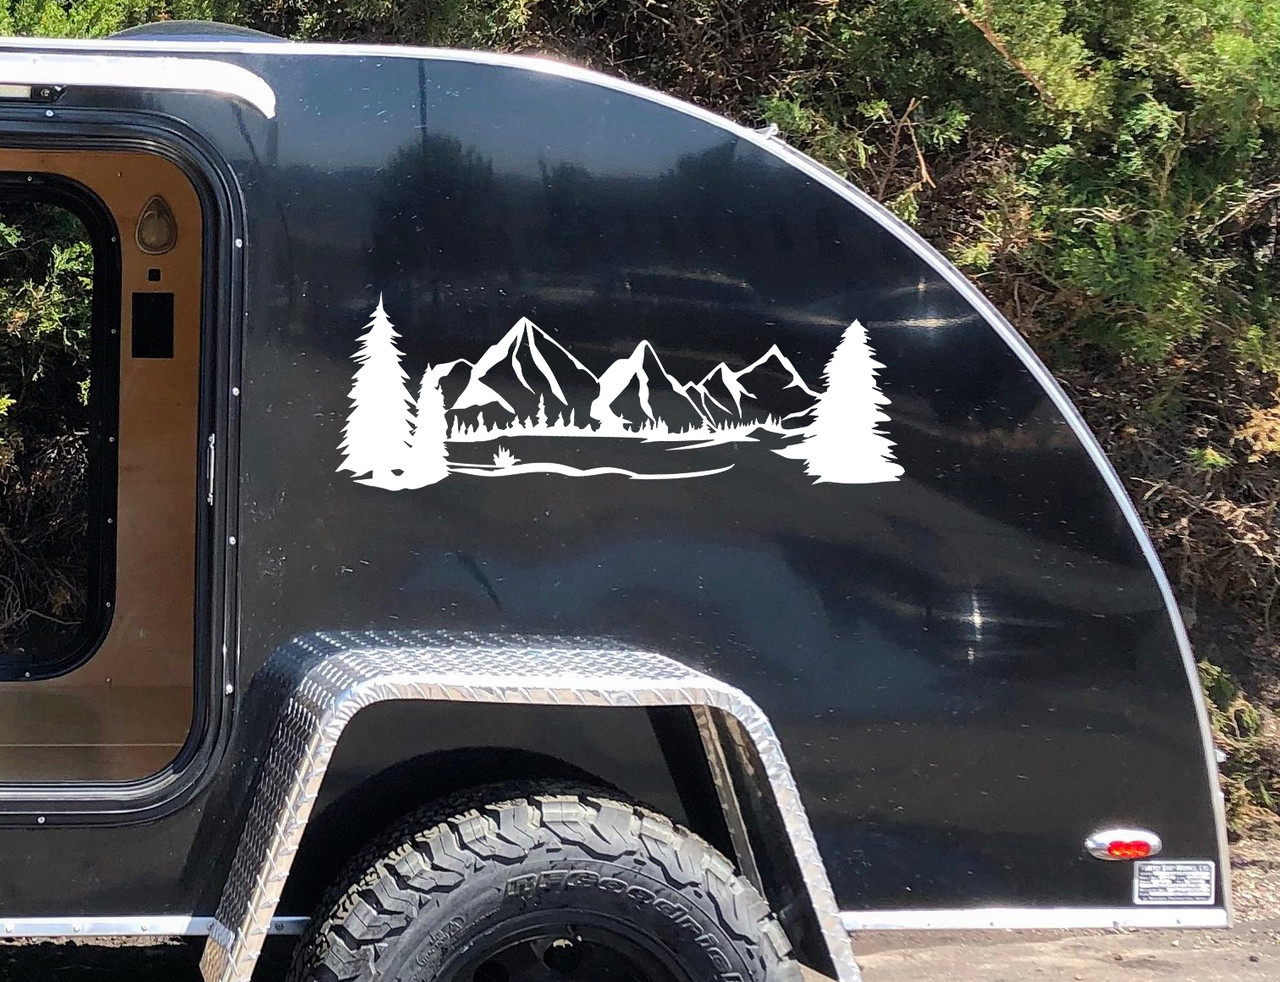 Mountains Forest Scene Vinyl Decal V6 - Camper RV Travel Trailer Graphics 4x4 - Die Cut Sticker